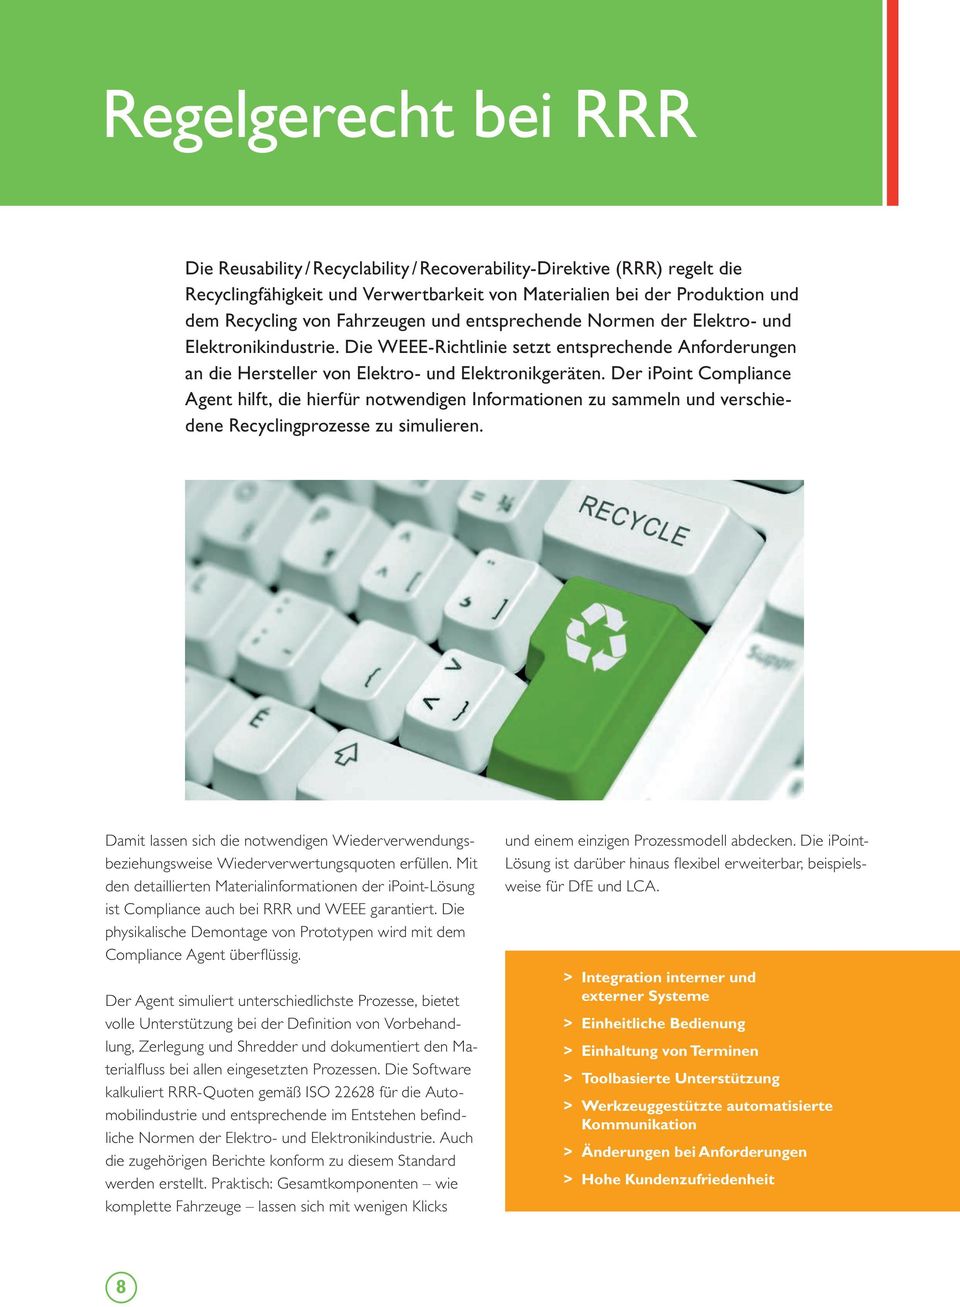 Der ipoint Compliance Agent hilft, die hierfür notwendigen Informationen zu sammeln und verschiedene Recyclingprozesse zu simulieren.